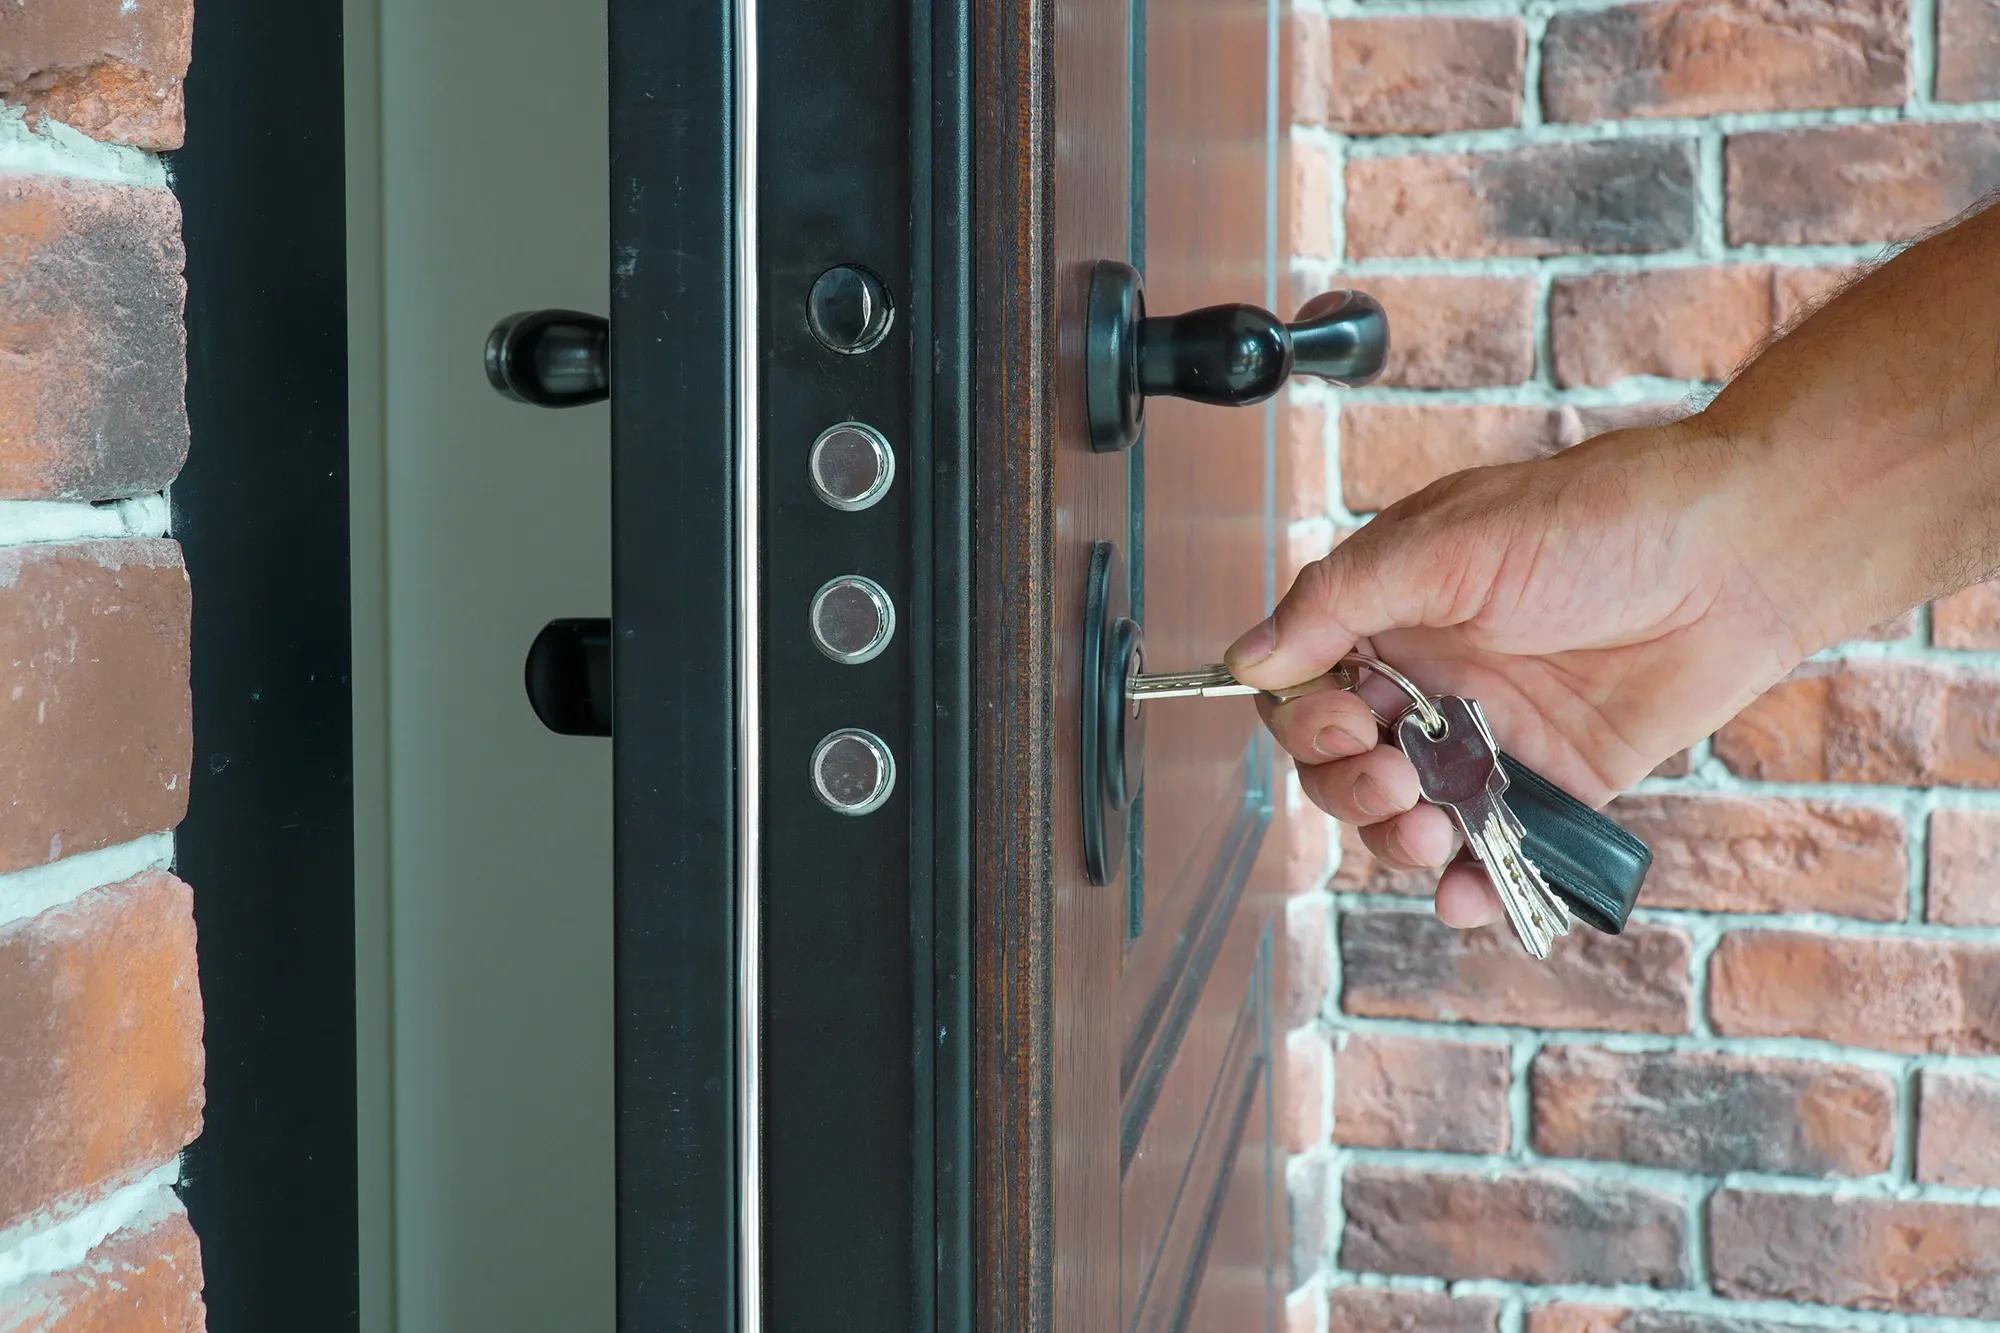 Närbild på hand som låser upp dörr med tegelvägg i bakgrunden - Säker och smidig låsöppning för ditt hem